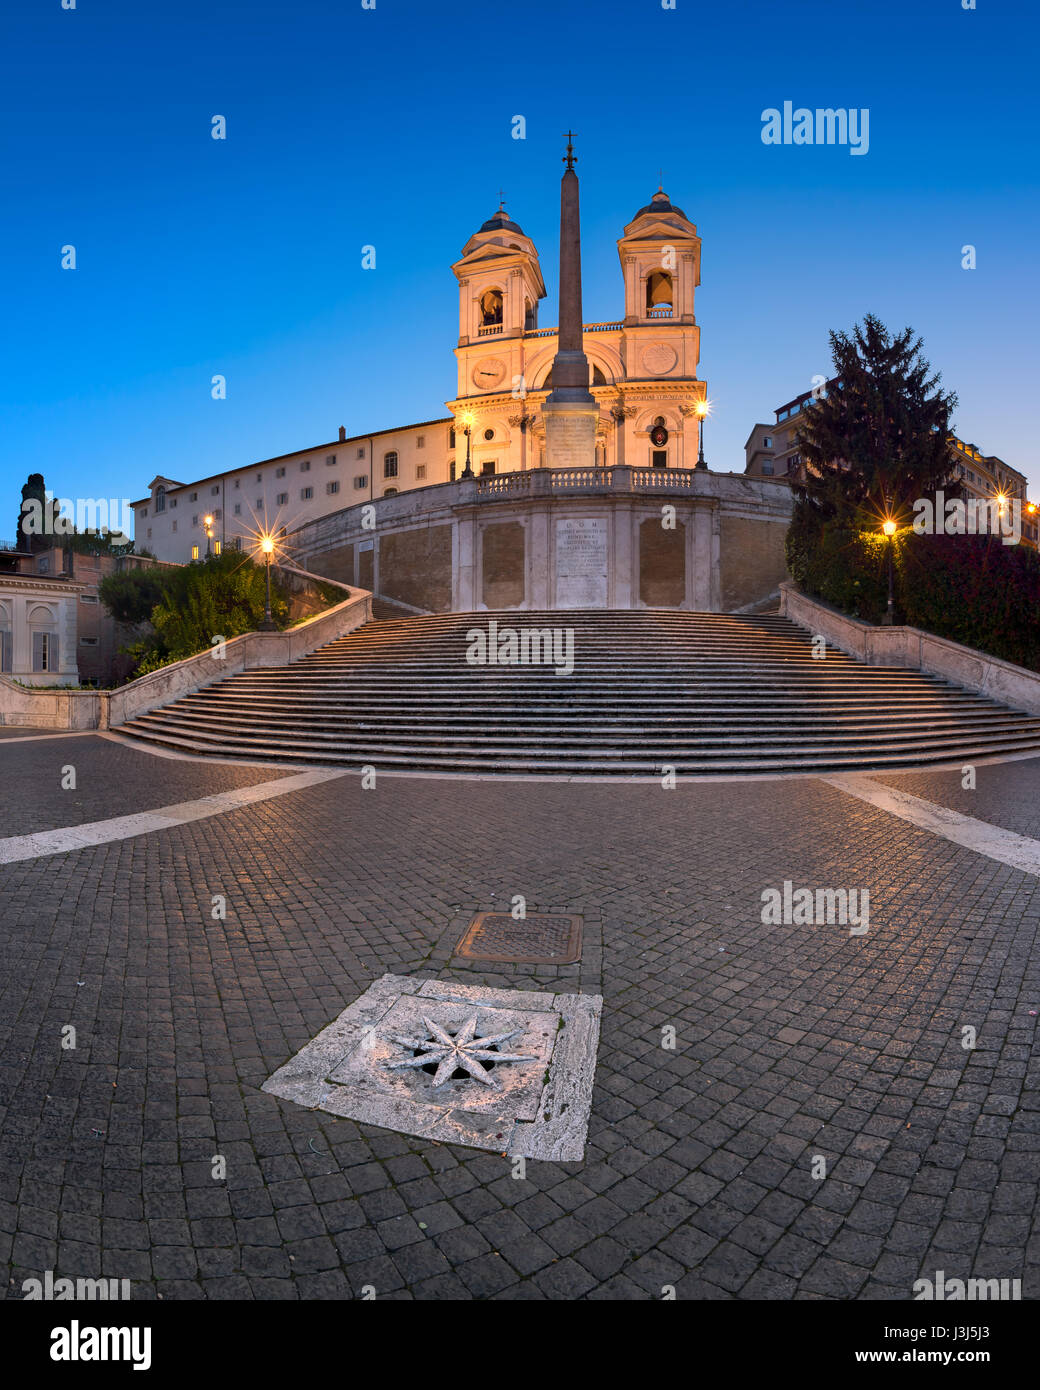 Rom, Italien - 1. November 2013: Piazza di Spagna und Kirche Trinita del Monti in Rom. Die monumentale Treppe mit 135 Stufen wurde mit französischen Diplom gebaut. Stockfoto